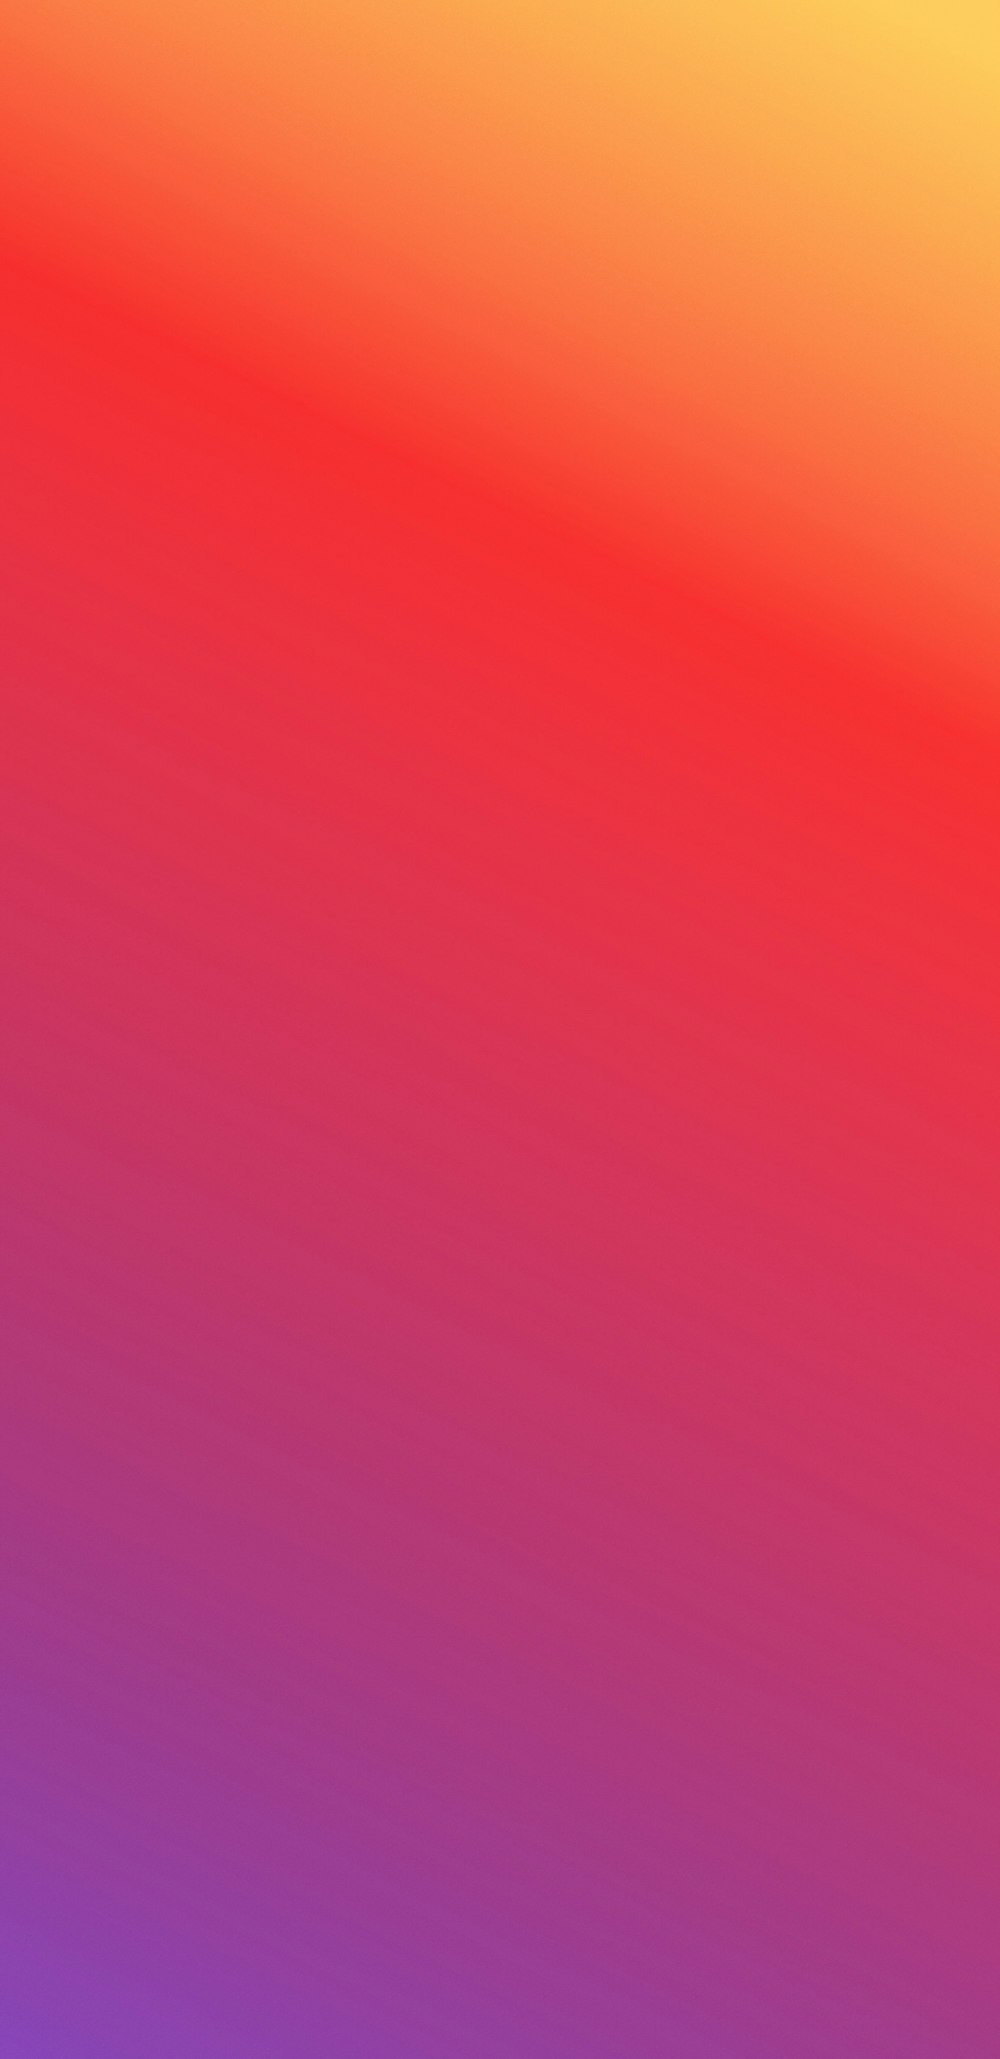 Dark purple to red to orange gradient photo – Free Gradient Image on  Unsplash